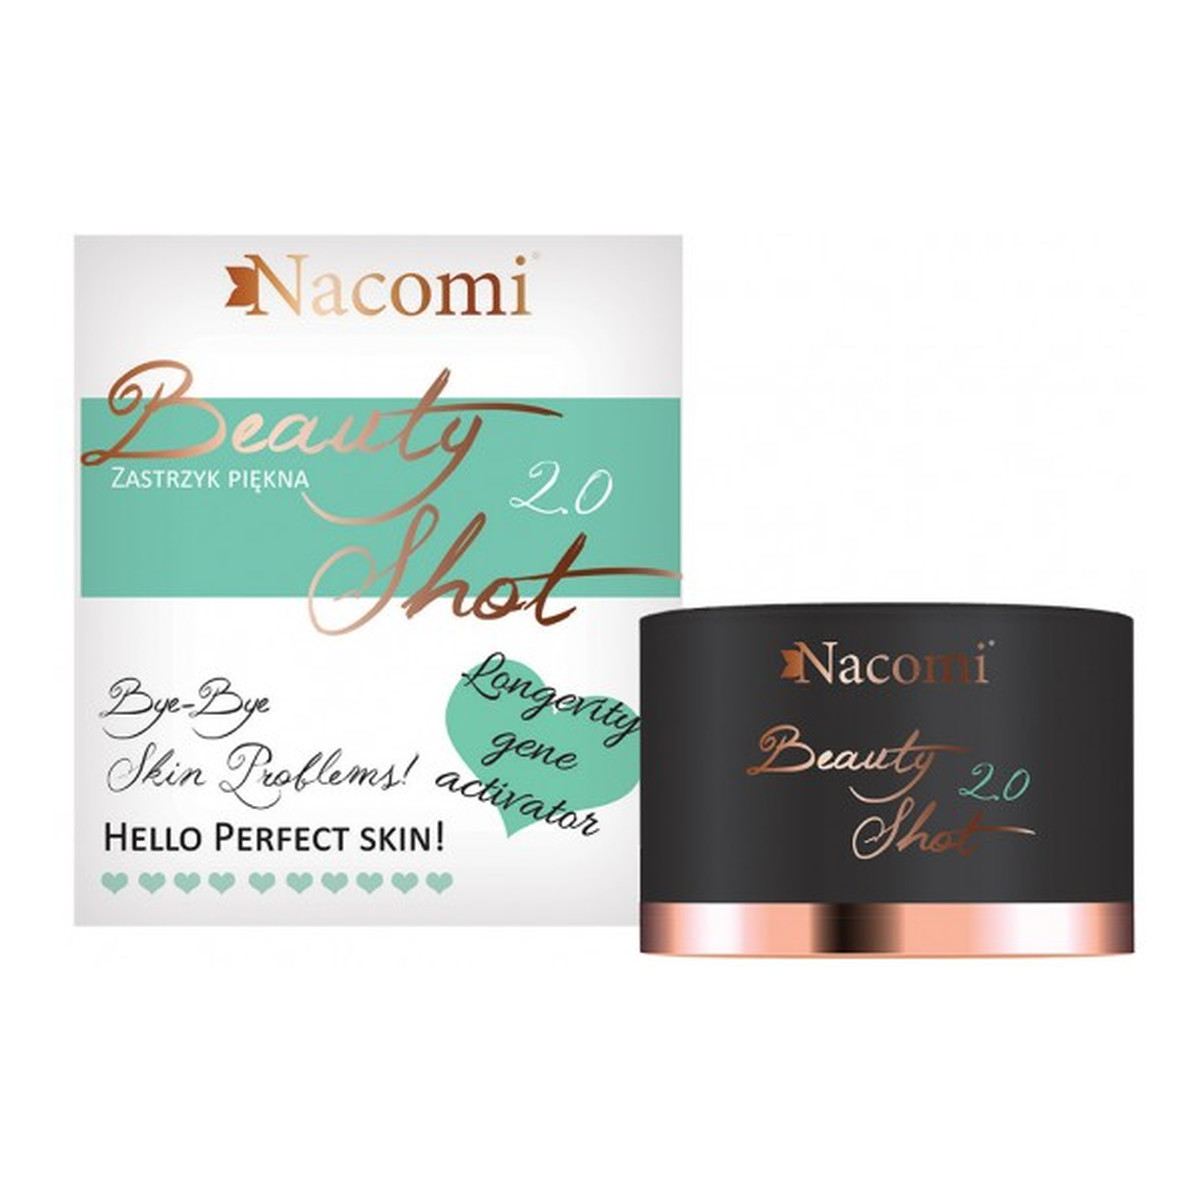 Nacomi Beauty Shot 2.0 zastrzyk piękna serum-krem do twarzy 30ml